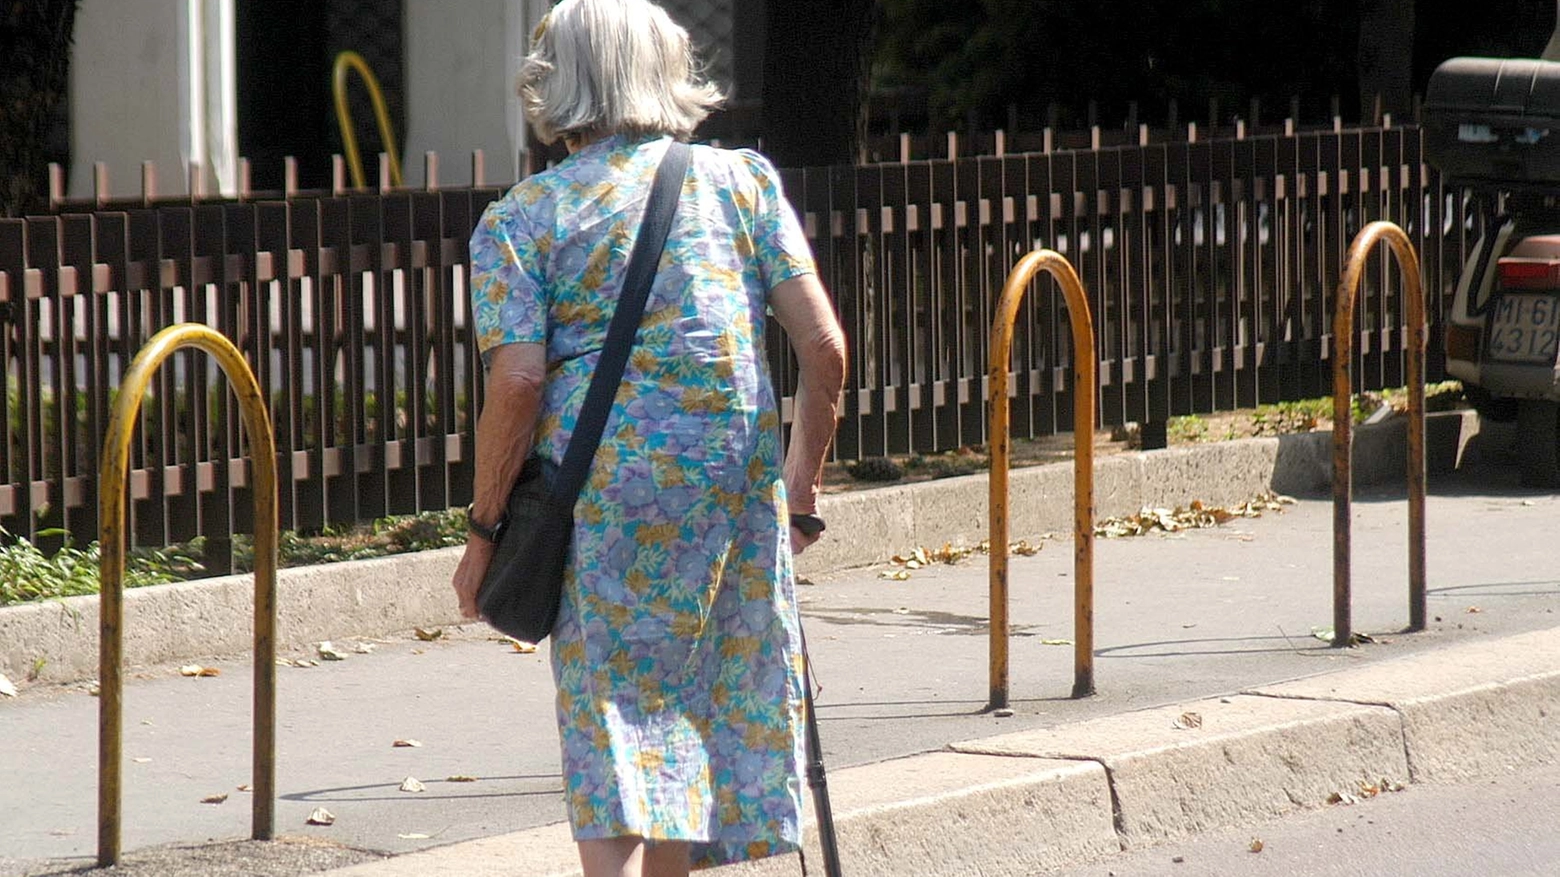 Una signora anziana a passeggio in un'immagine d'archivio (Newpress)